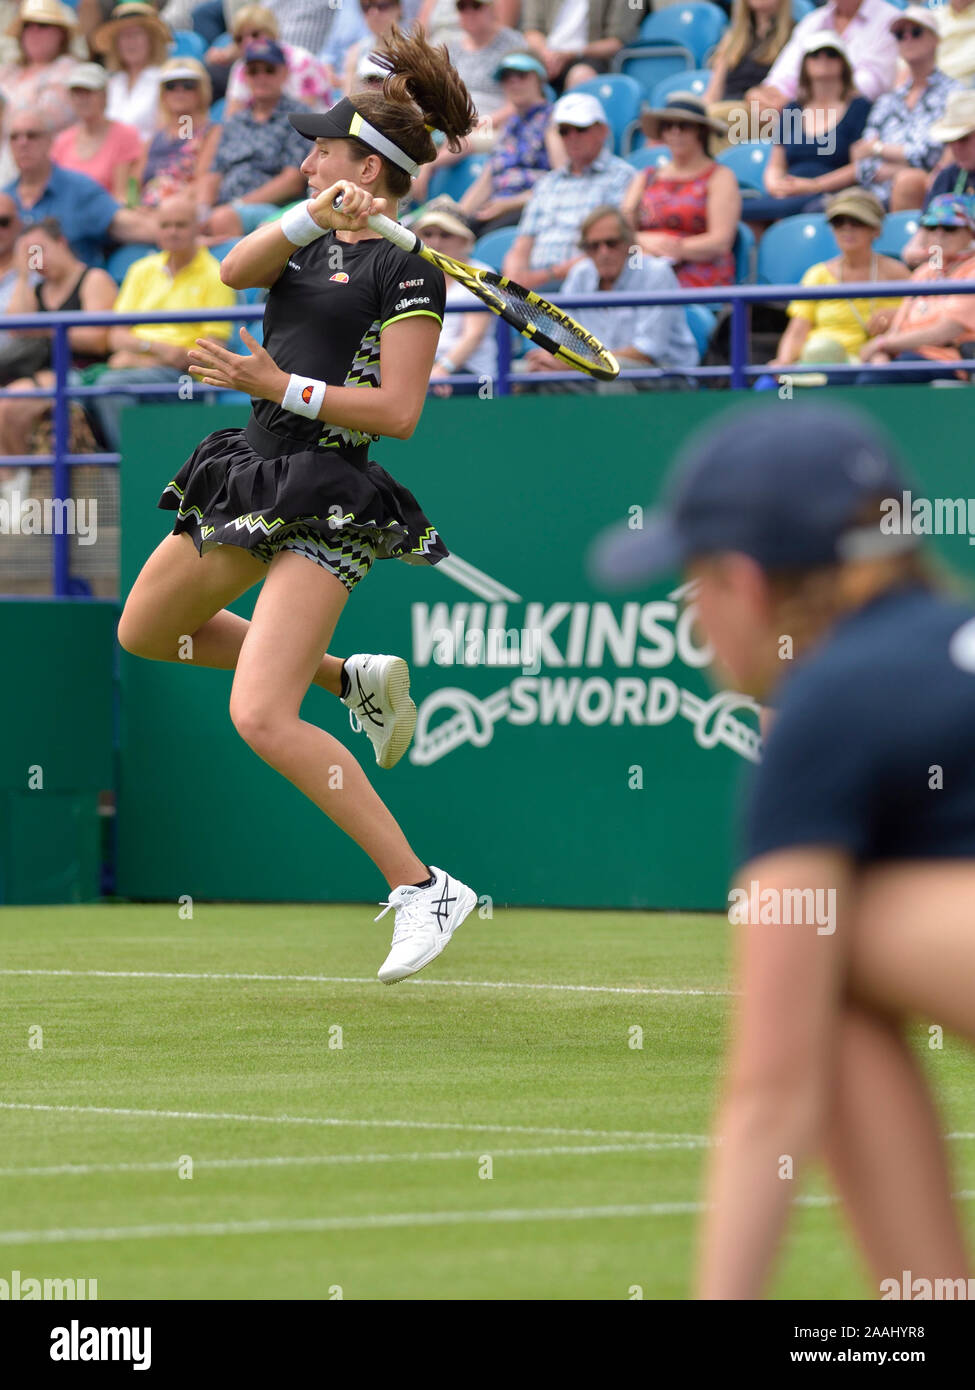 Johanna Konta (GB) giocando sul Centre Court alla natura Valle internazionali di tennis in Devonshire Park, Eastbourne, Inghilterra, Regno Unito. Il 25 giugno 2019. Sfera Foto Stock